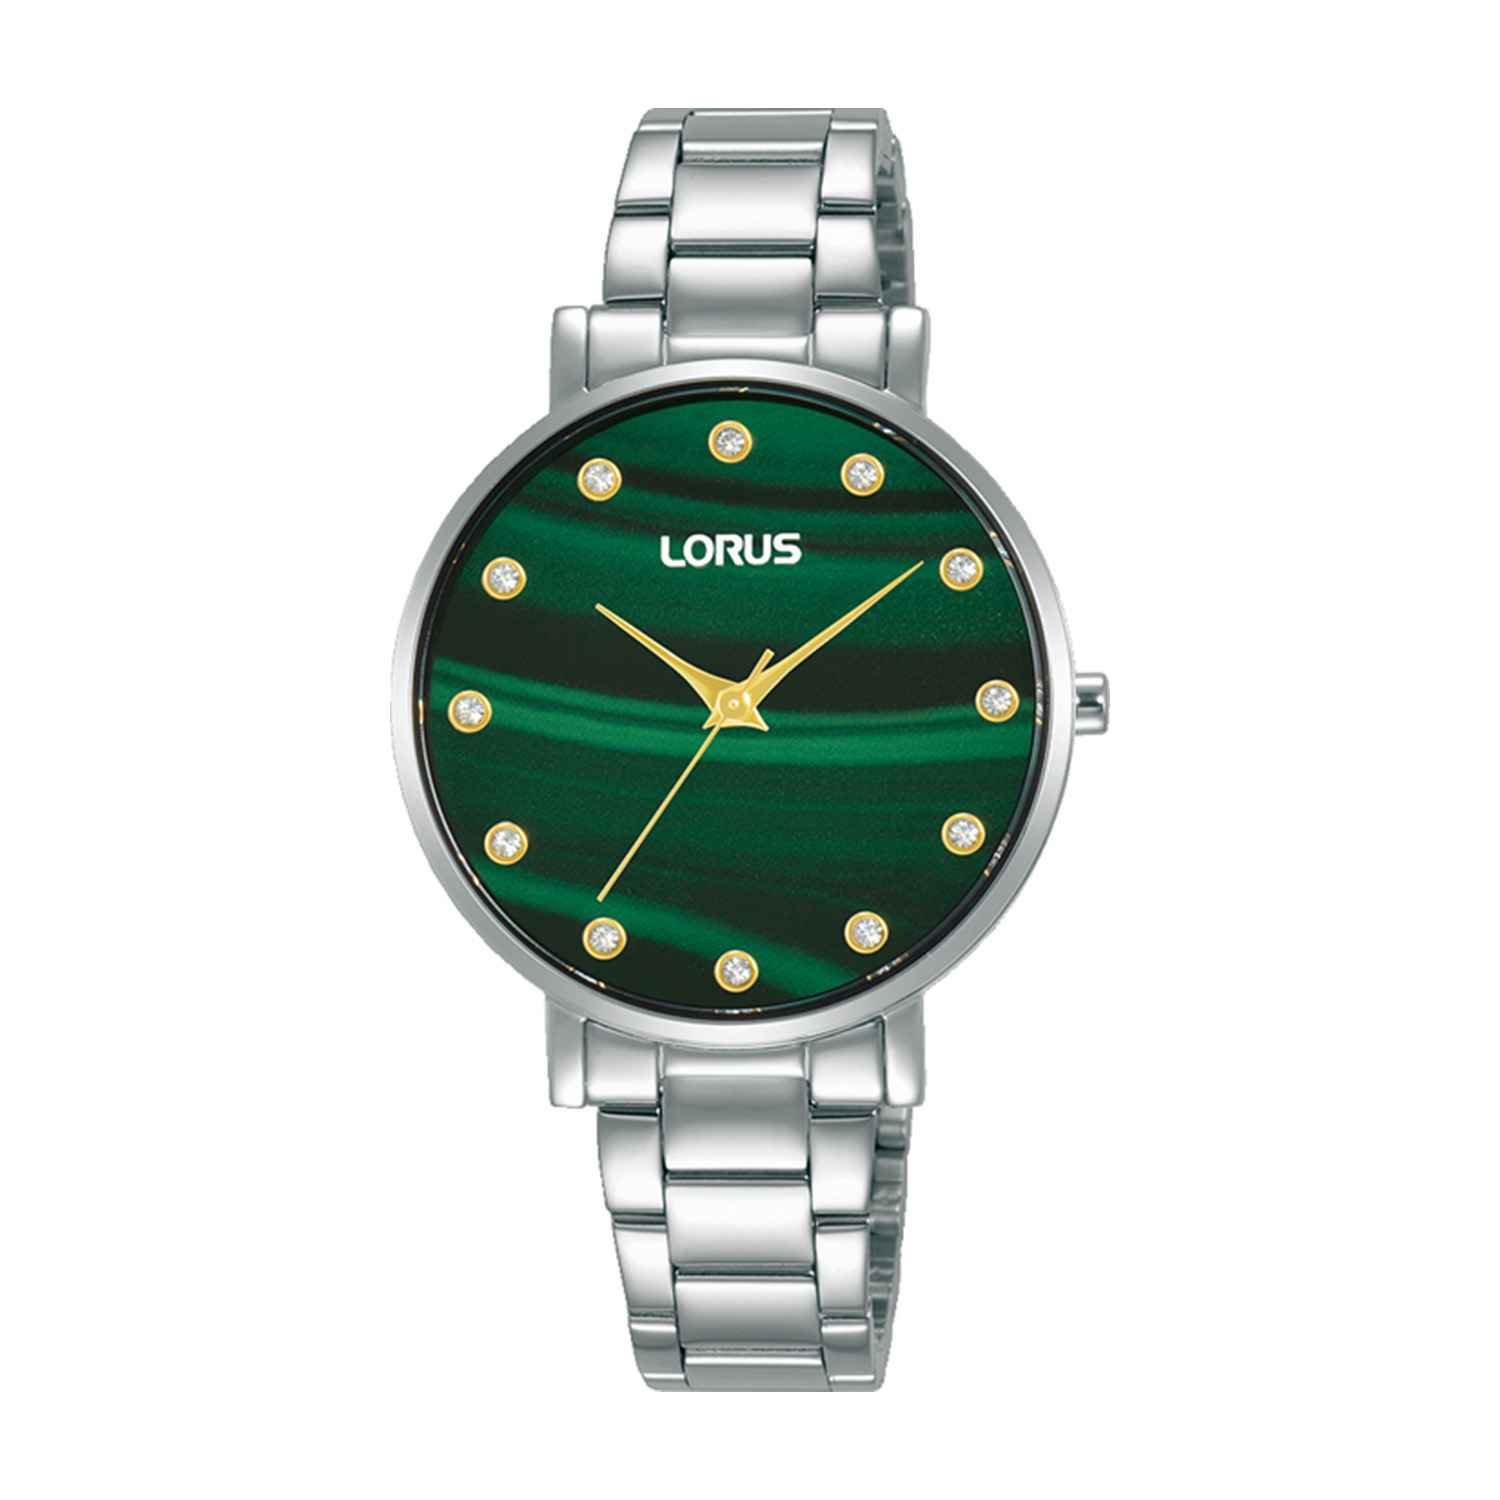 Γυναικείο ρολόι LORUS από ασημί ανοξείδωτο ατσάλι με πράσινο καντράν και μπρασελέ.